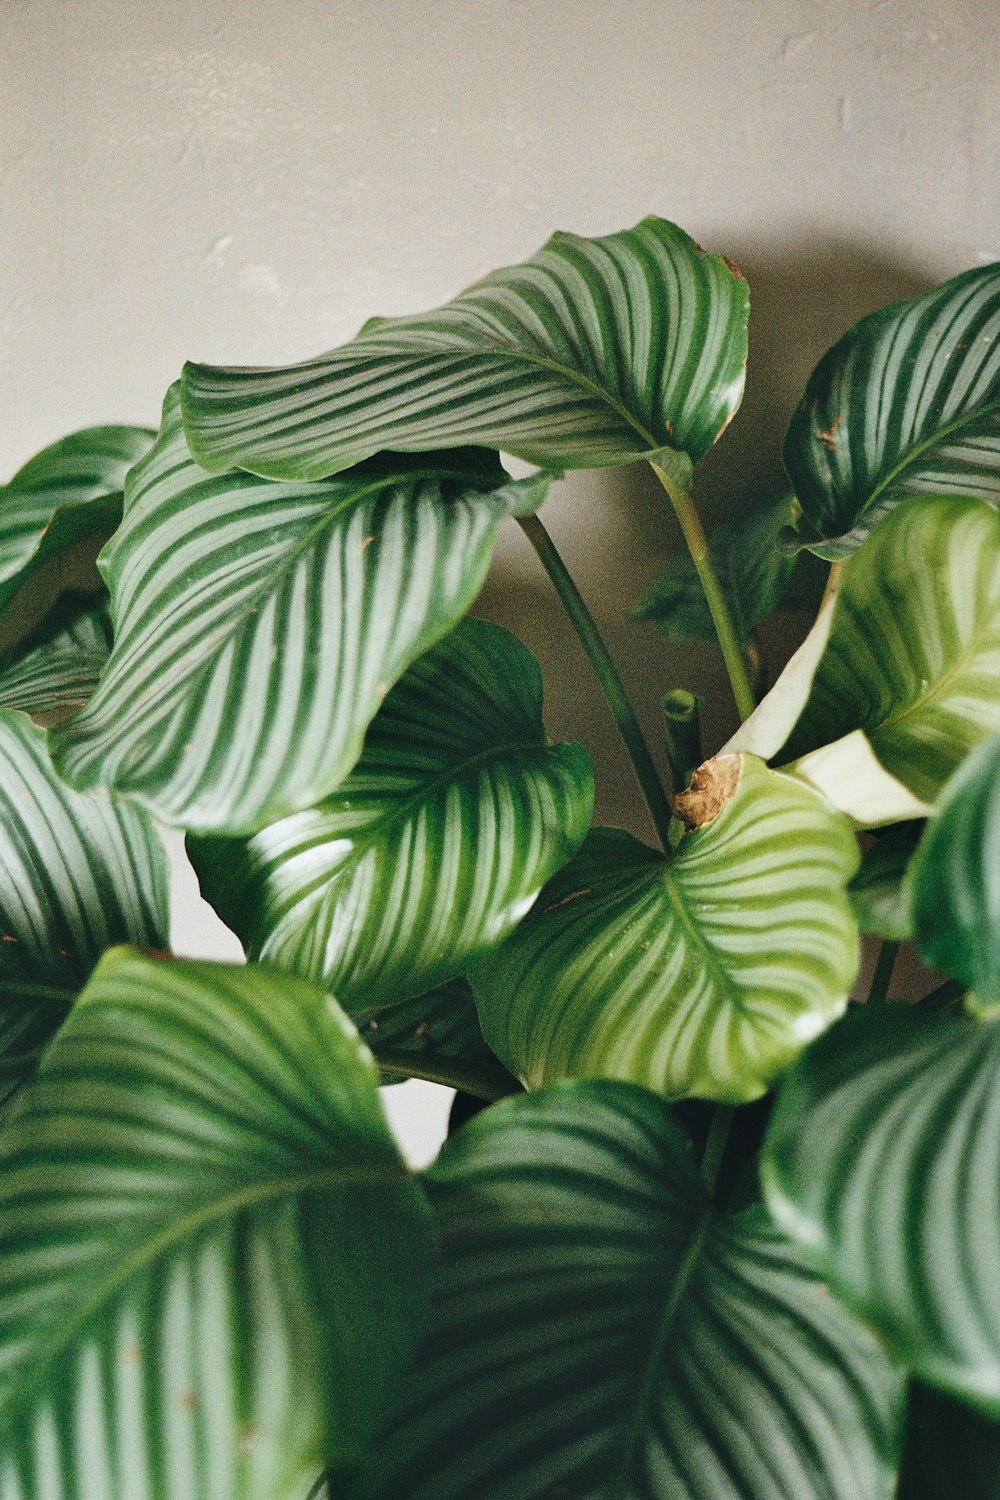 green broad-leaf indoor potted plant